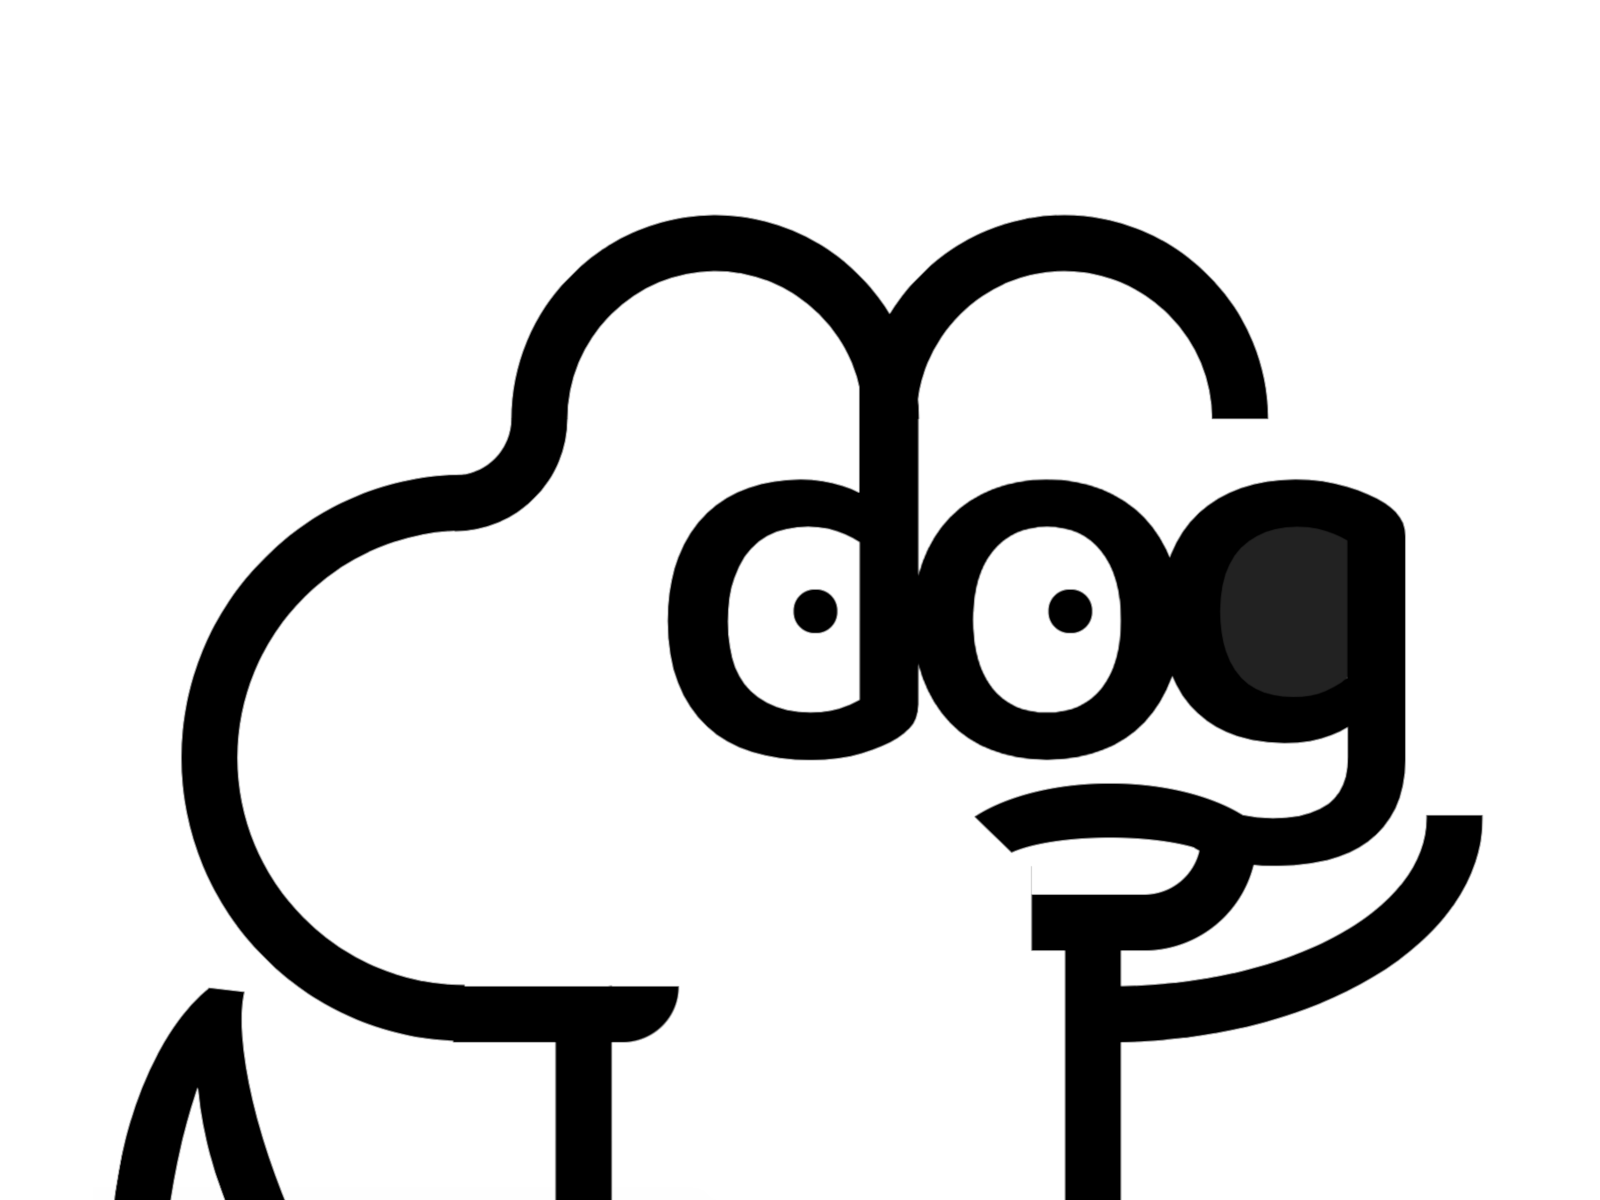 Minimalistic cartoon of a dog